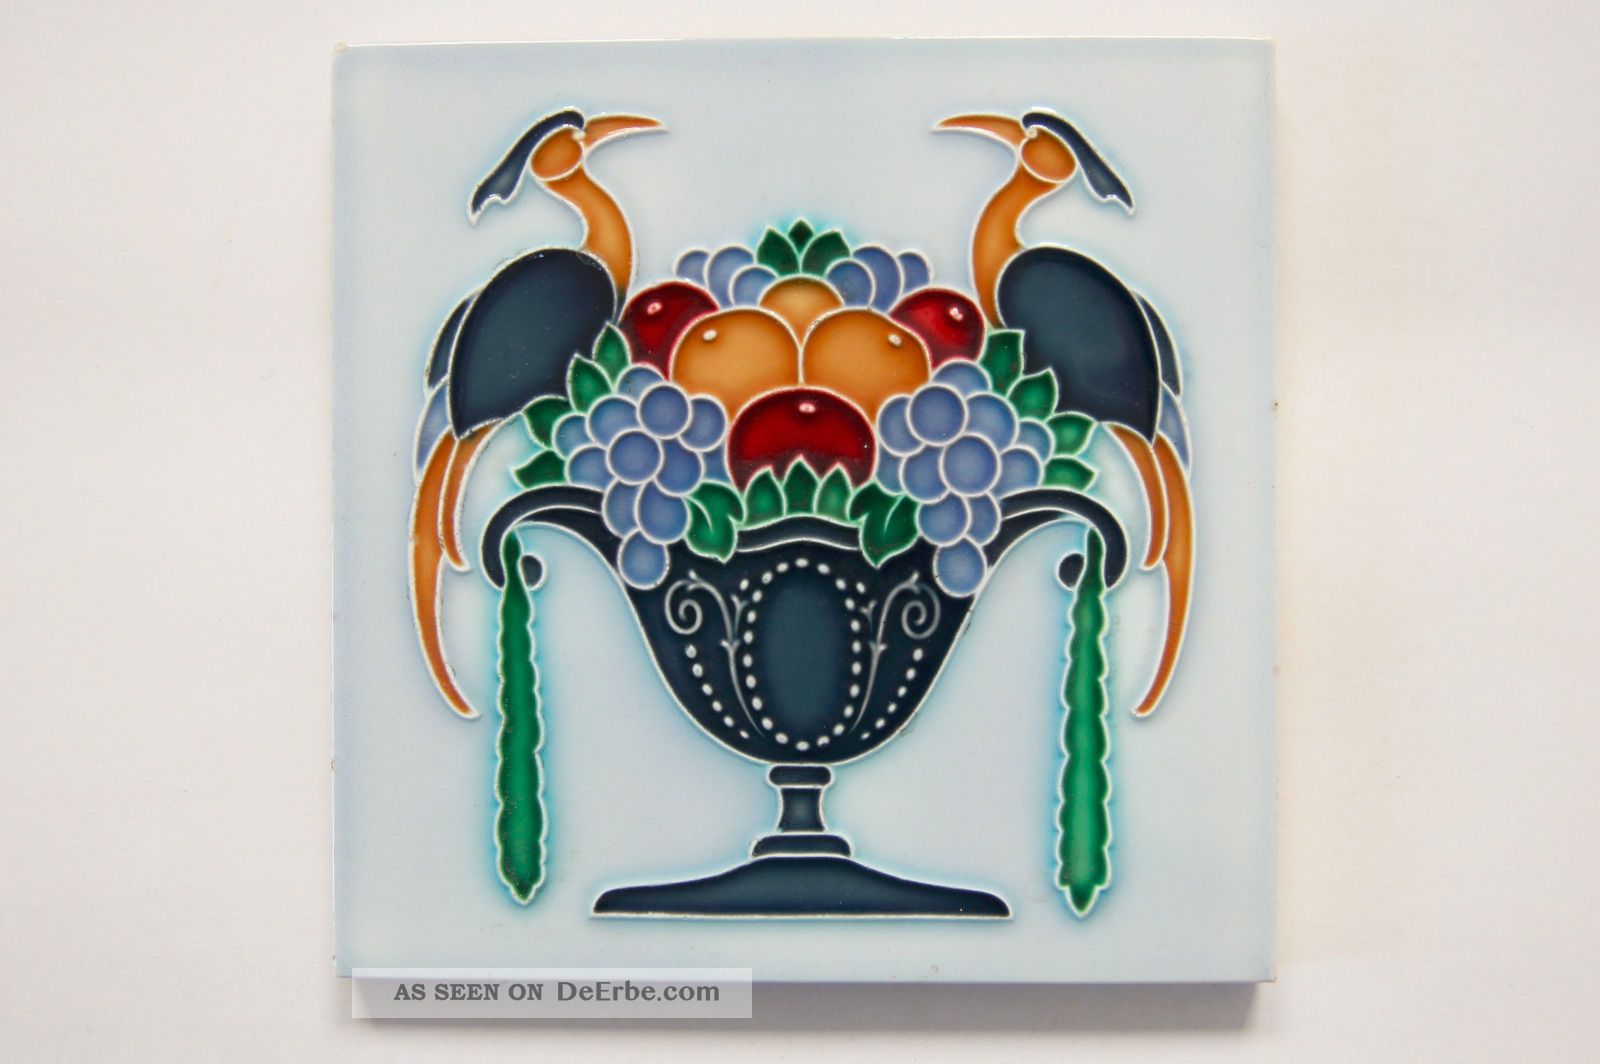 Jugendstil Fliese Kachel,  Art Nouveau Tile,  Tegel,  Pokal,  Schale,  Obst,  Vögel Nach Form & Funktion Bild